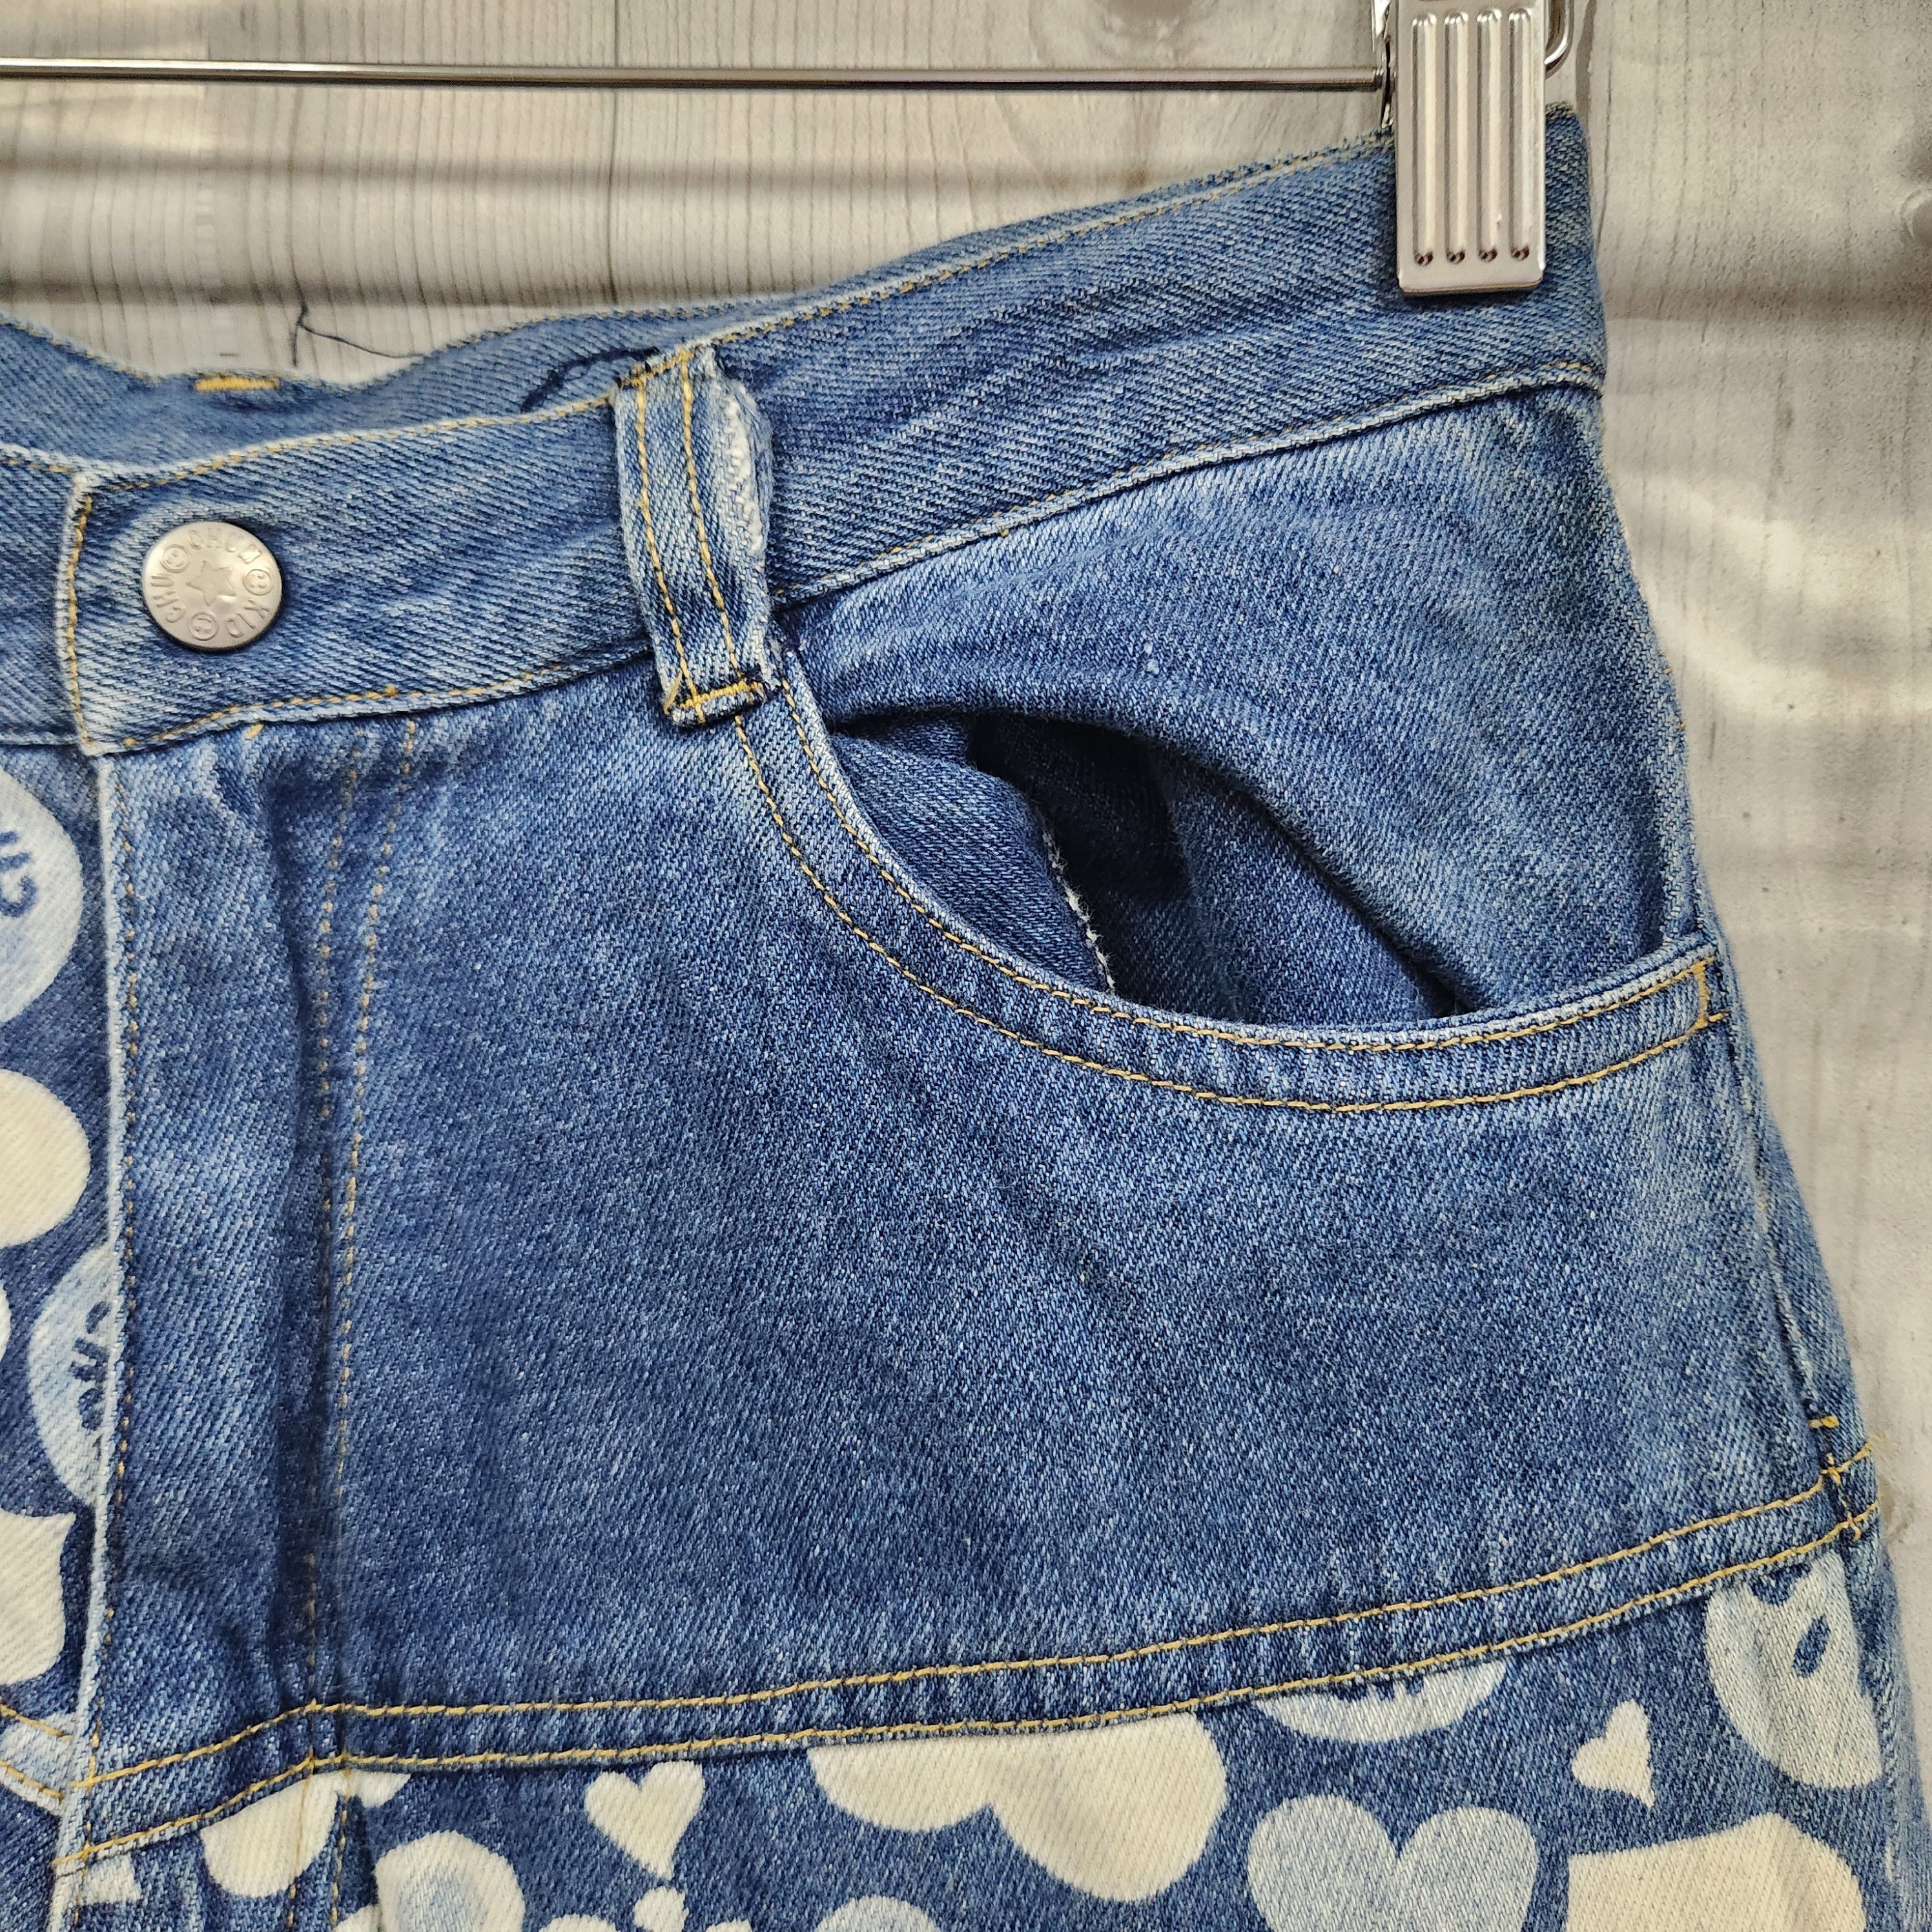 Disco 80s Chuchum Patches Denim Vintage Jeans Japan - 3